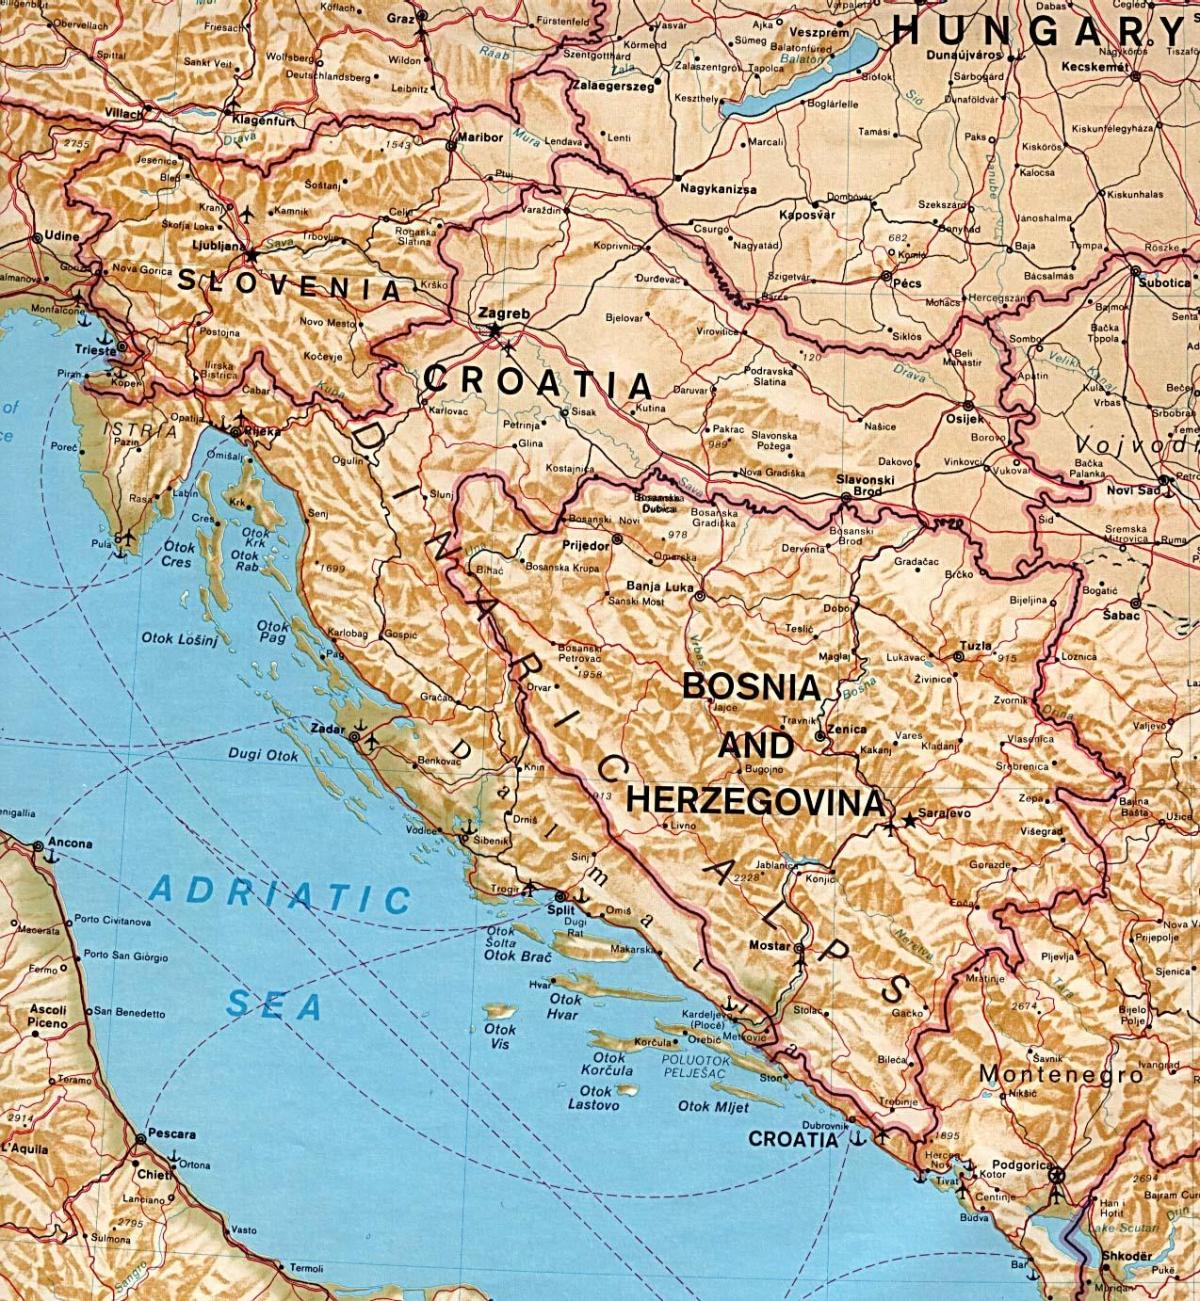 la mappa mostra la Slovenia